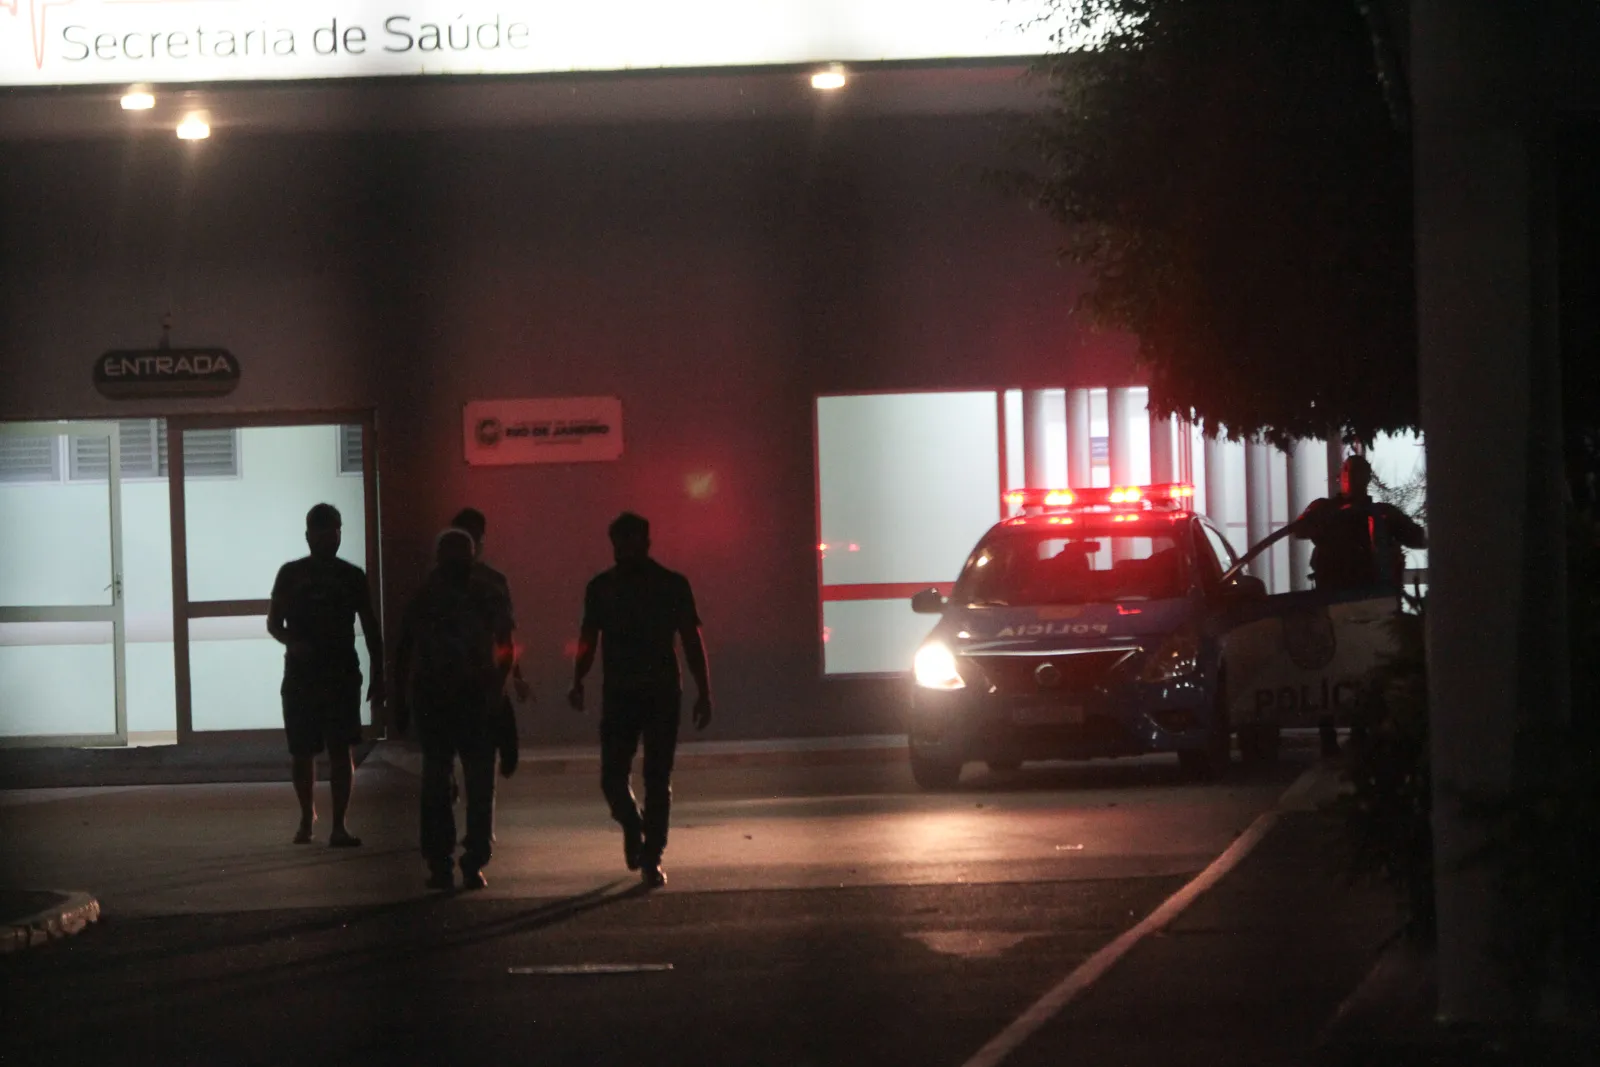 A vítima foi atendida no Hospital Alberto torres, mas não resistiu aos ferimentos.